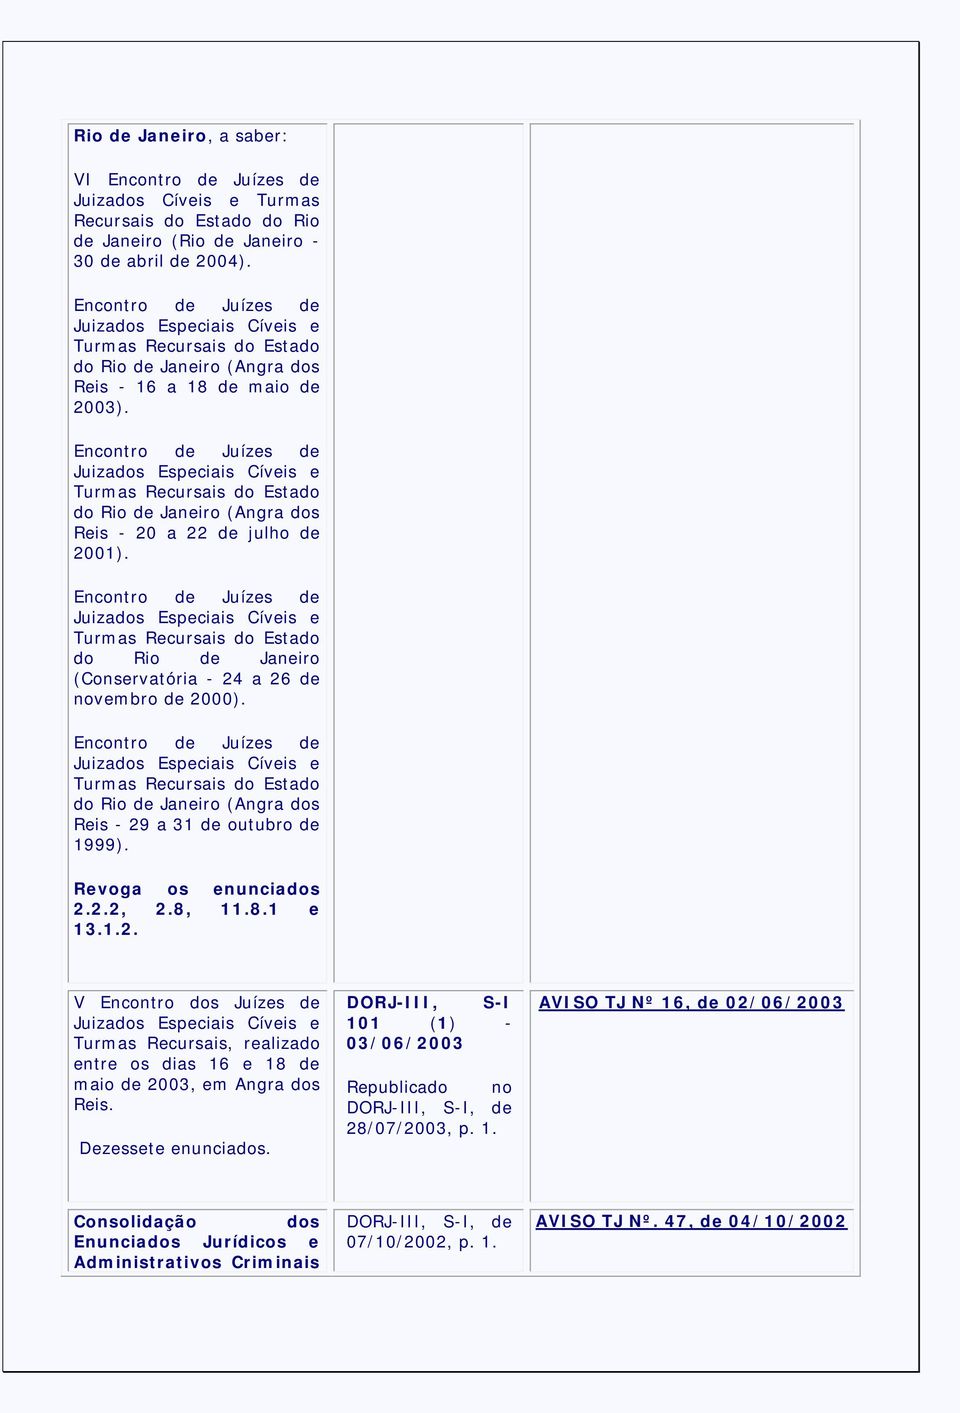 Encontro de Juízes de Juizados Especiais Cíveis e Turmas Recursais do Estado do Rio de Janeiro (Angra dos Reis - 20 a 22 de julho de 2001).